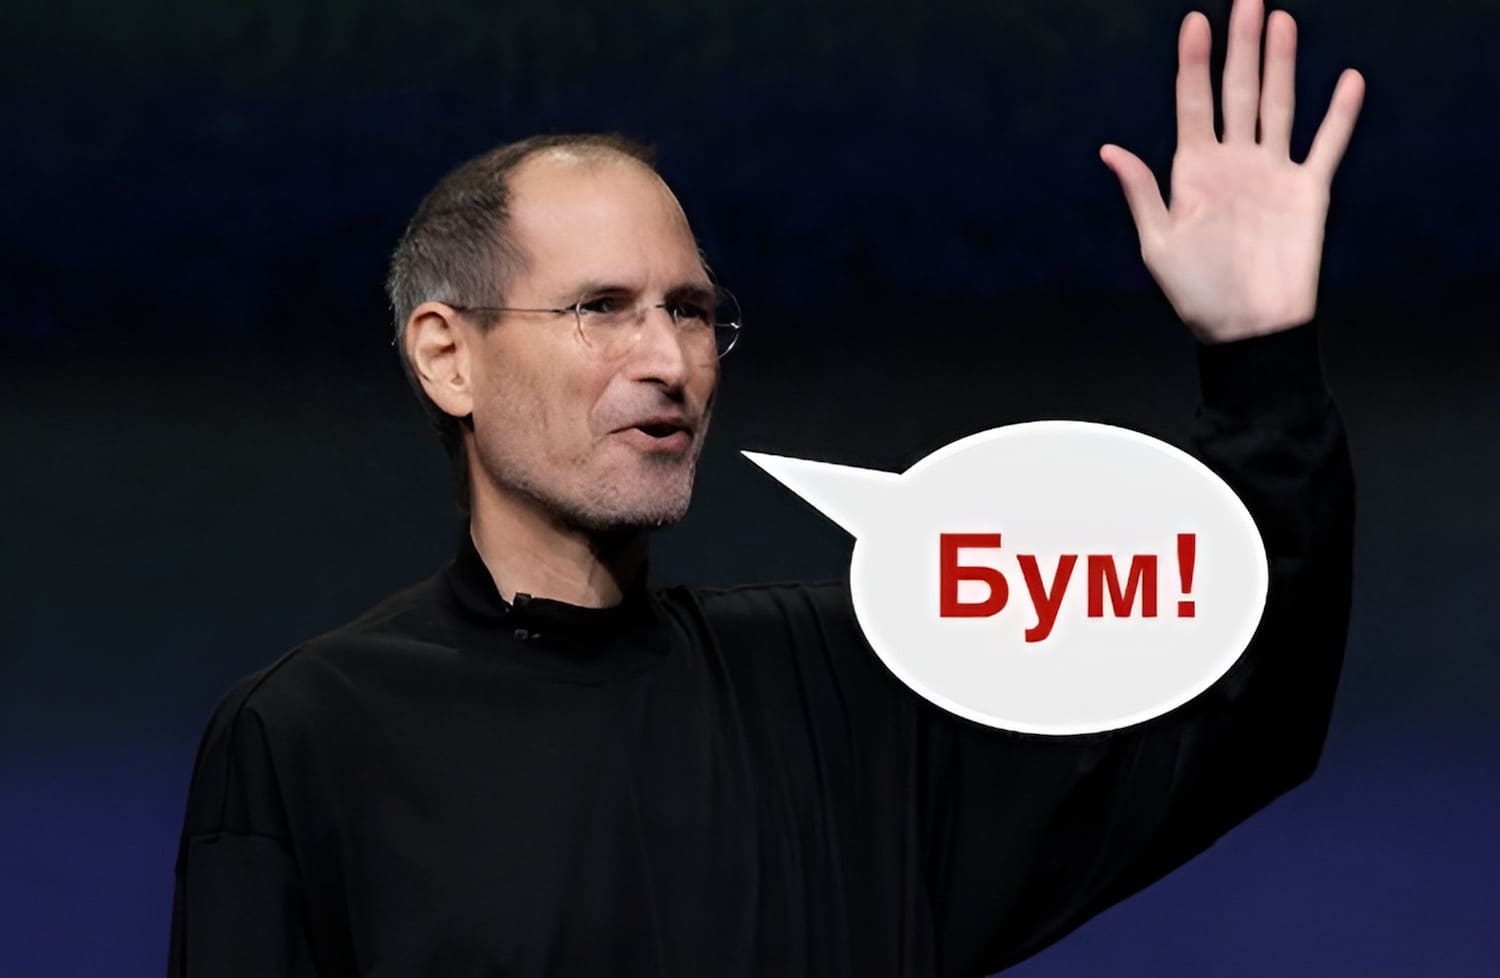 Стив Джобс и его «бум»: как основатель Apple использовал это слово-паразит на презентациях